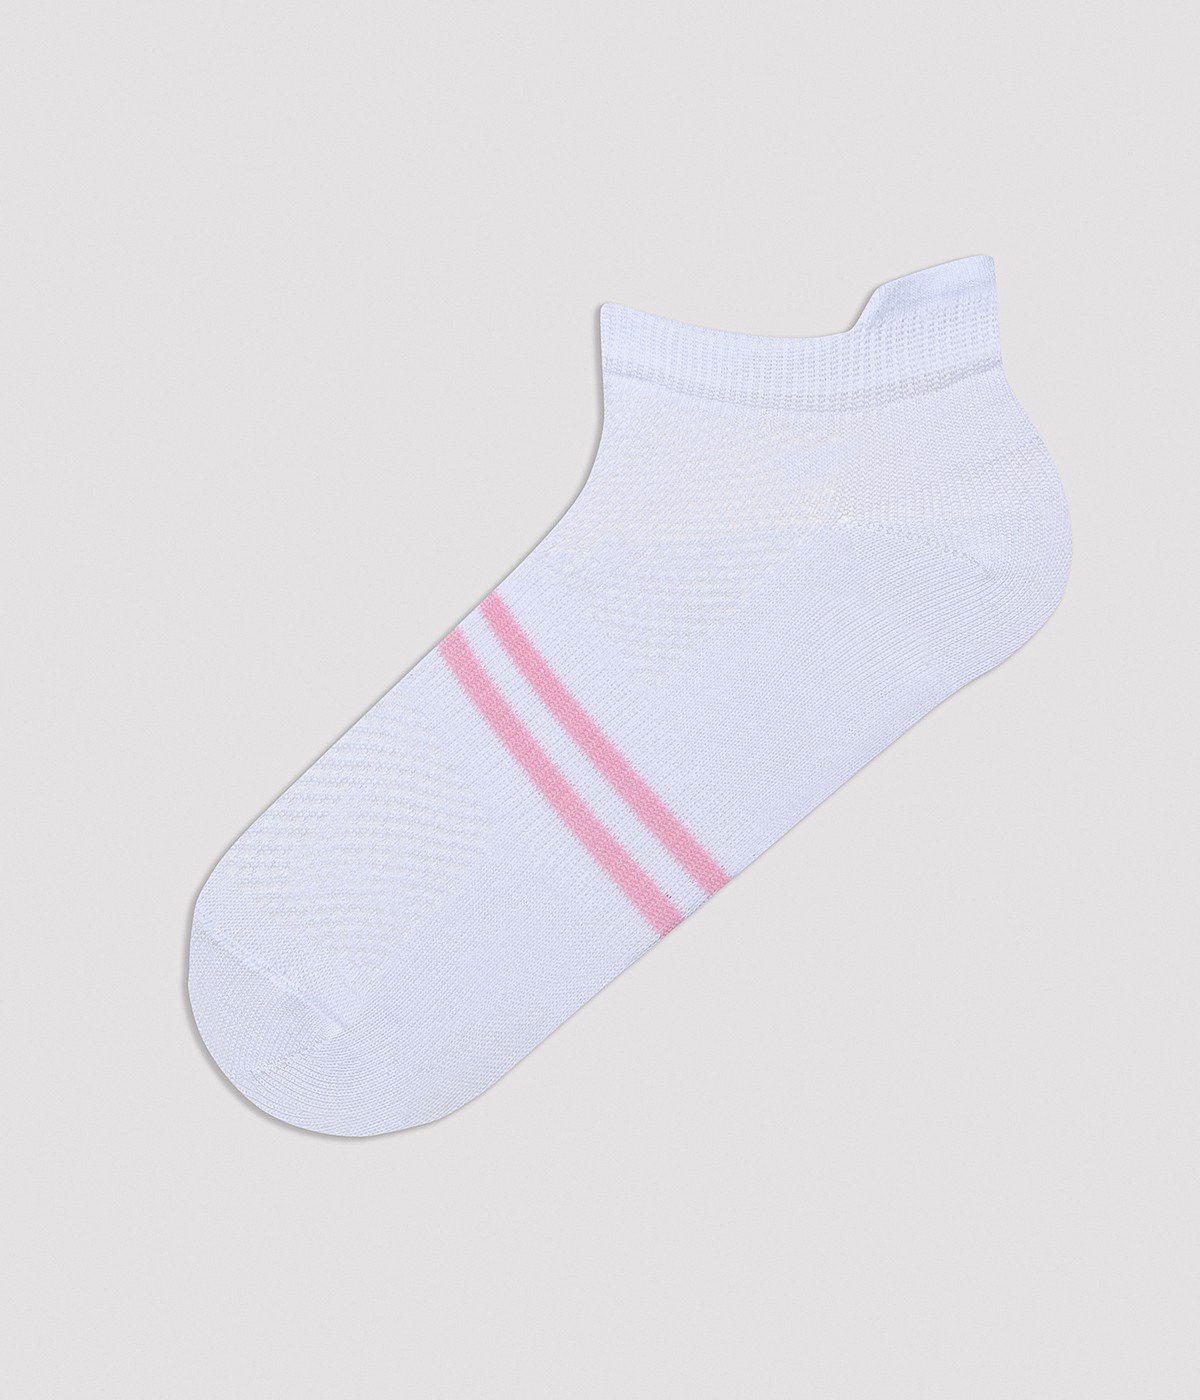 Sporty 5in1 Liner Socks